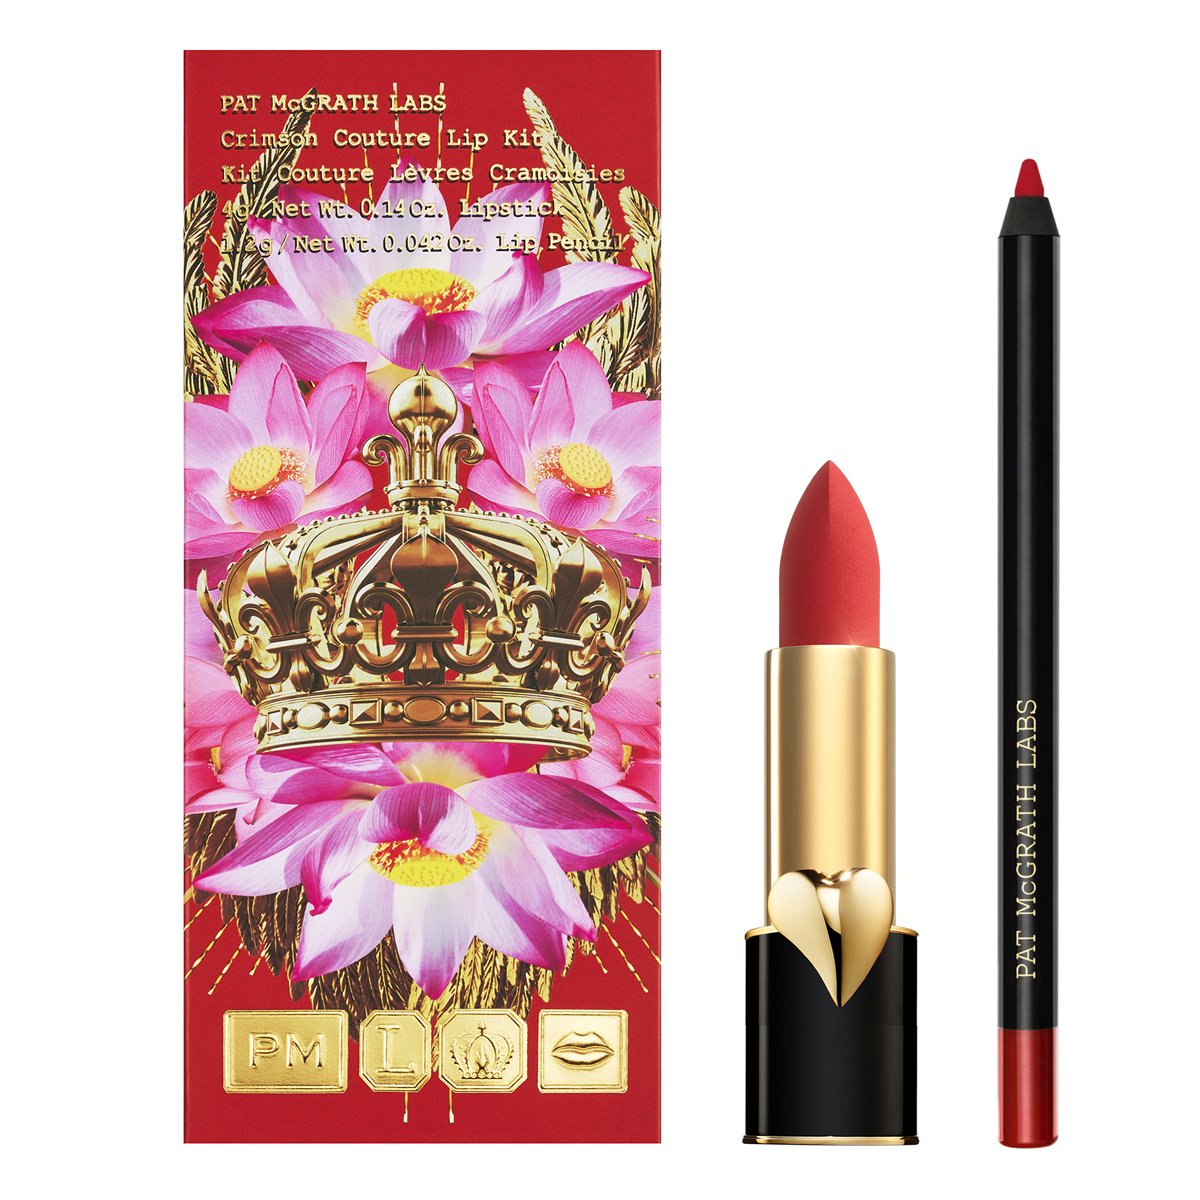 Pat McGrath Crimson Couture Lip Kit, Limited Edition